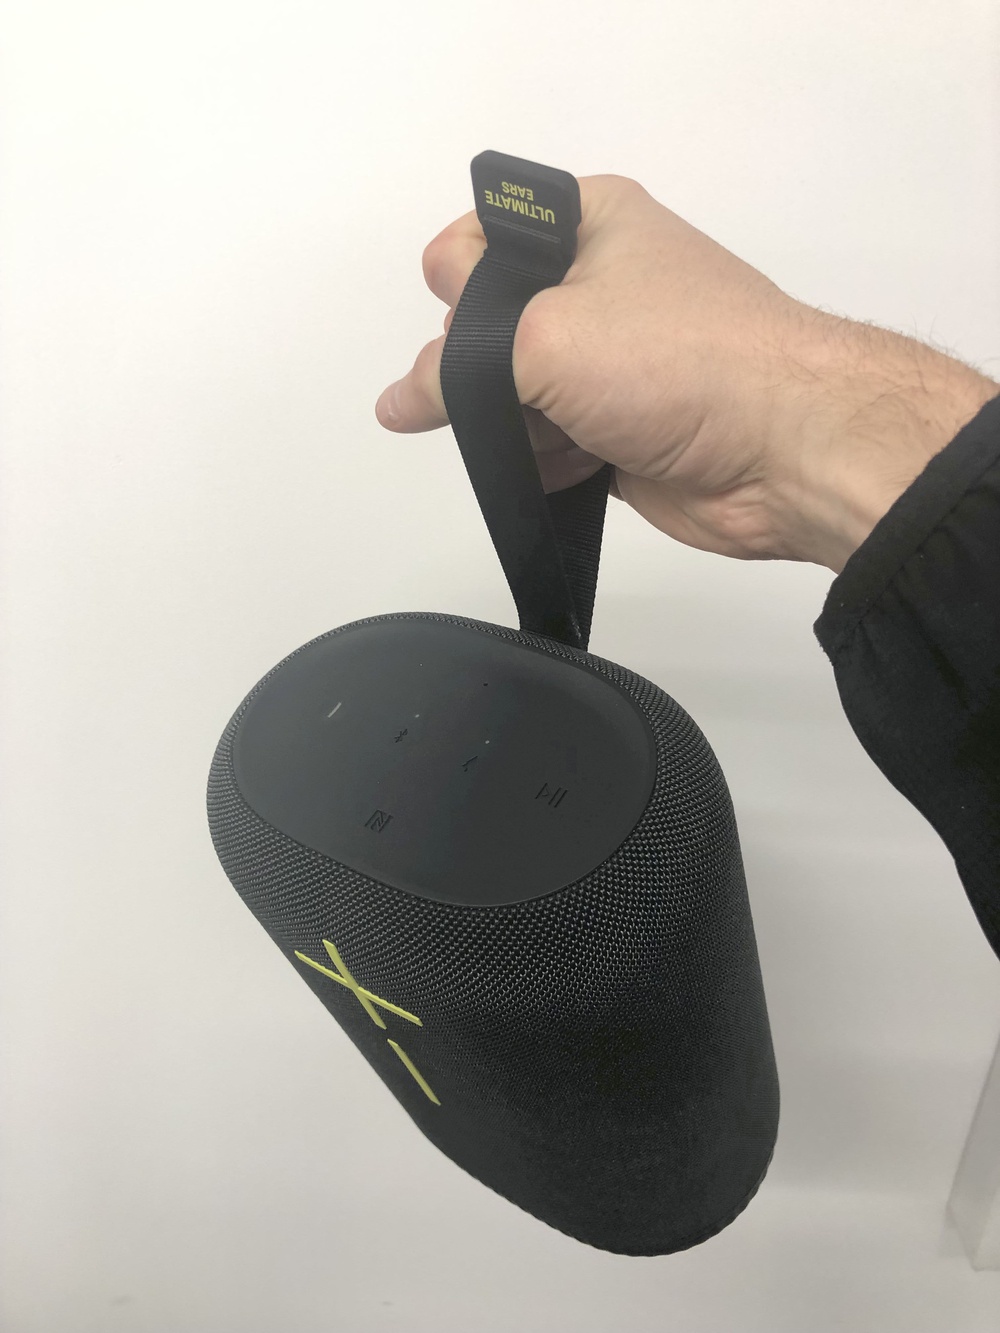 Ultimate Ears Debuts EPICBOOM Waterproof Portable Bluetooth Speakers 